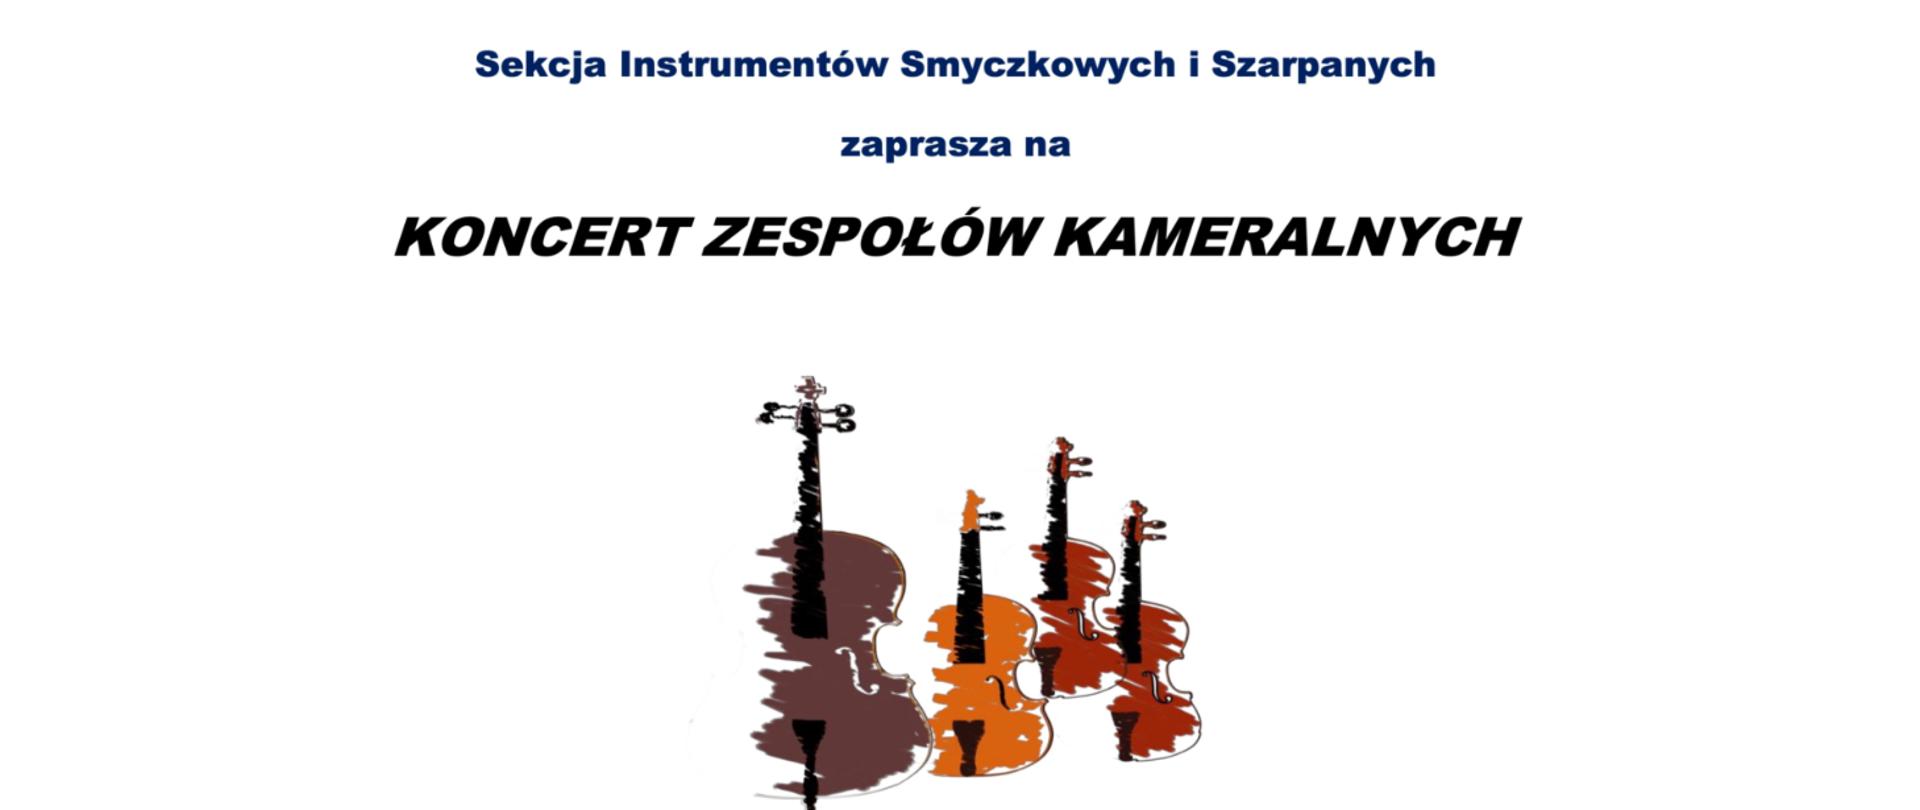 Plakat przedstawia w swej centralnej części 4 kolorowe ikony instrumentów smyczkowych. U góry tekst: sekcja instrumentów smyczkowych i szarpanych zaprasza na koncert zespołów kameralnych.